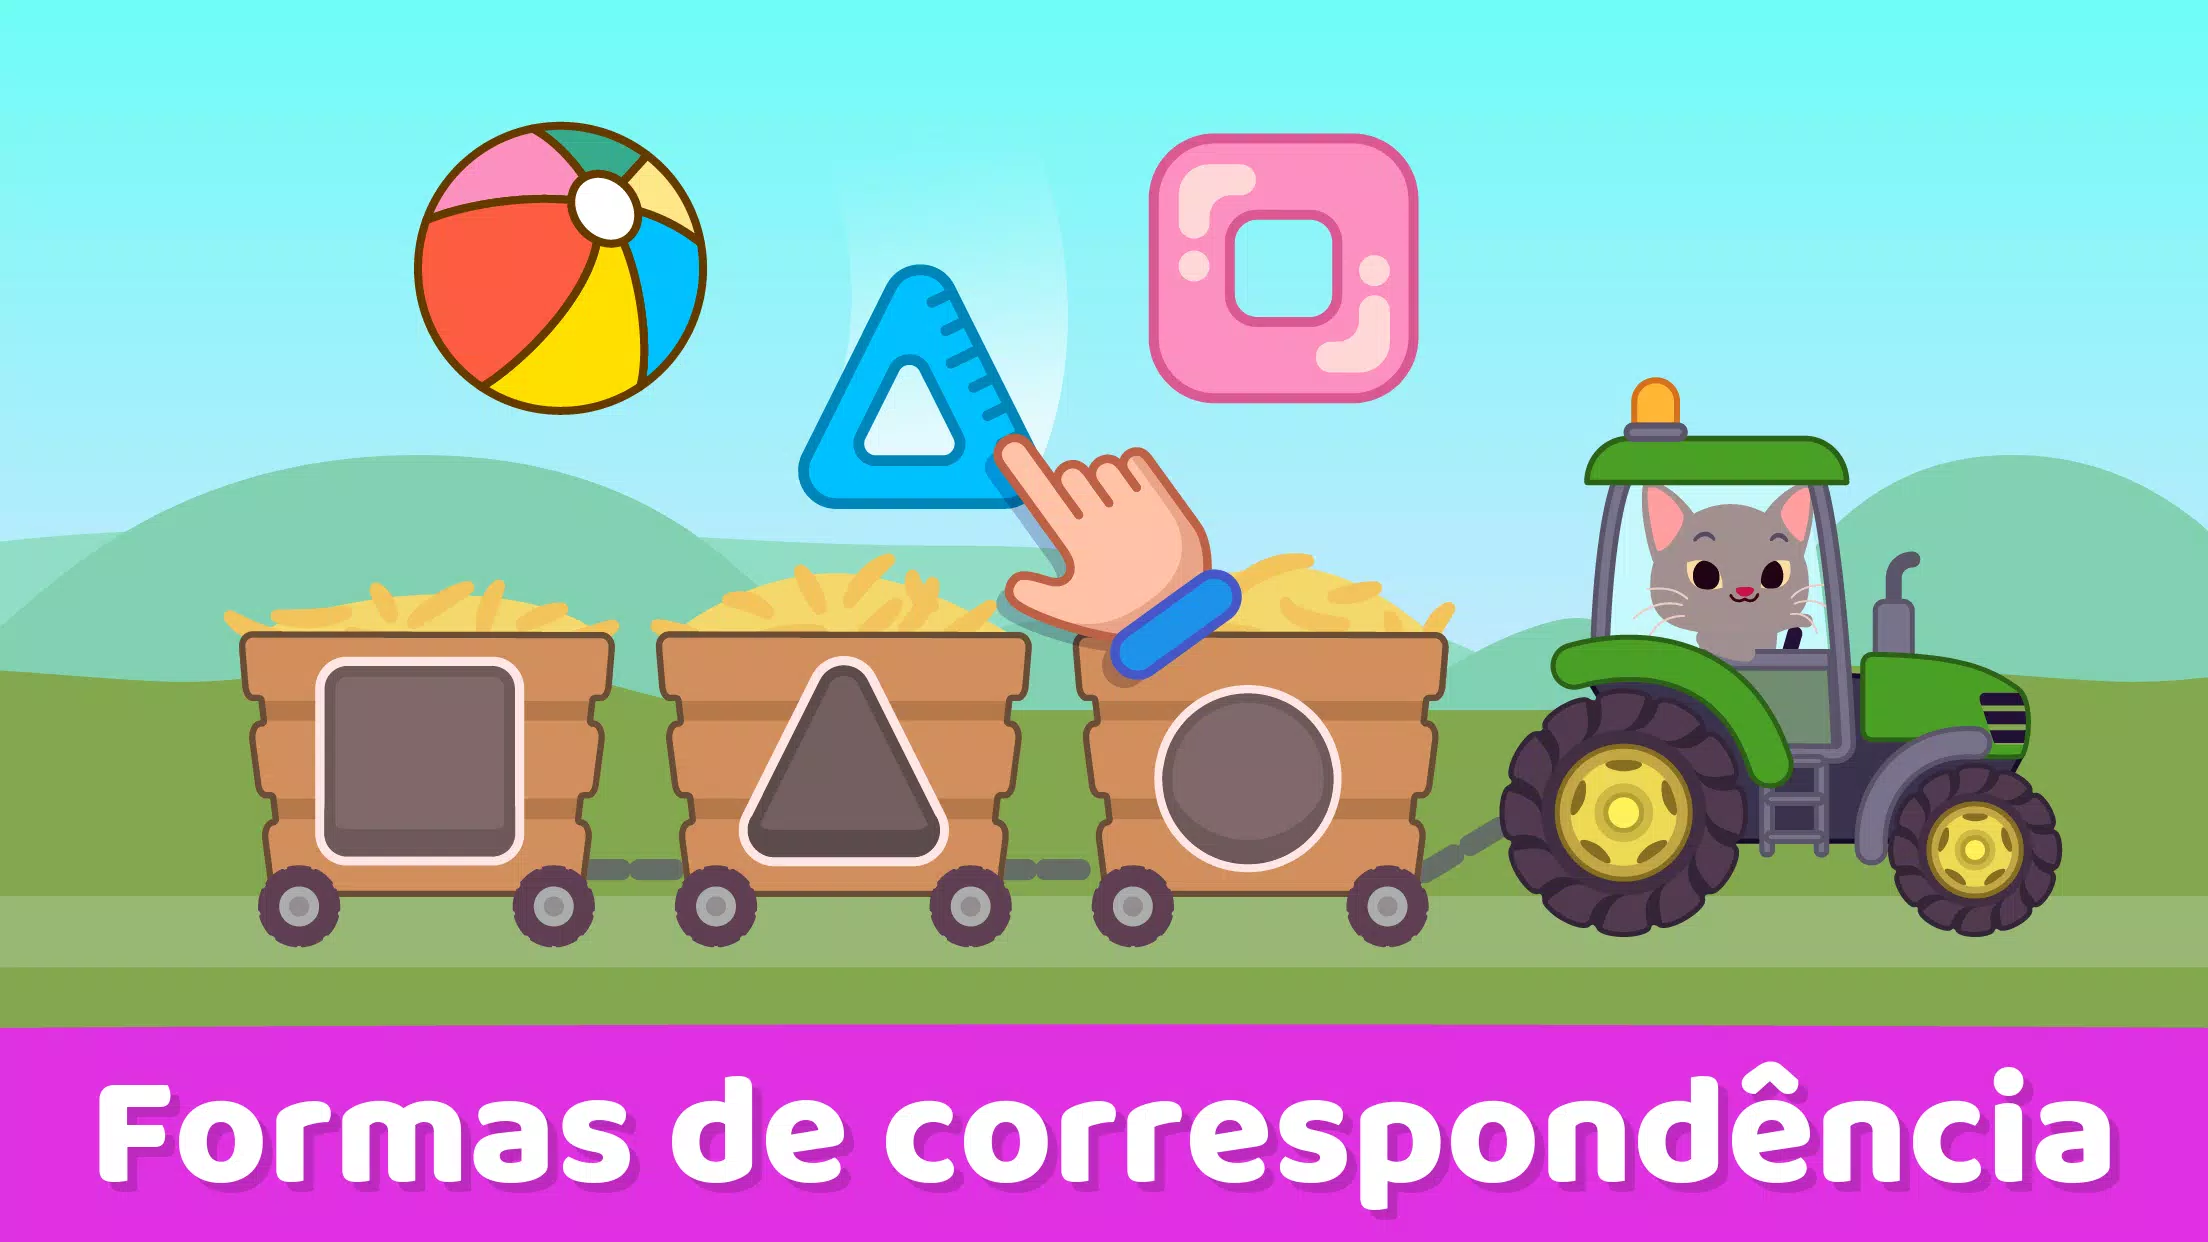 Jogos do Bebê - Para crianças de 2,3,4 anos - Baixar APK para Android